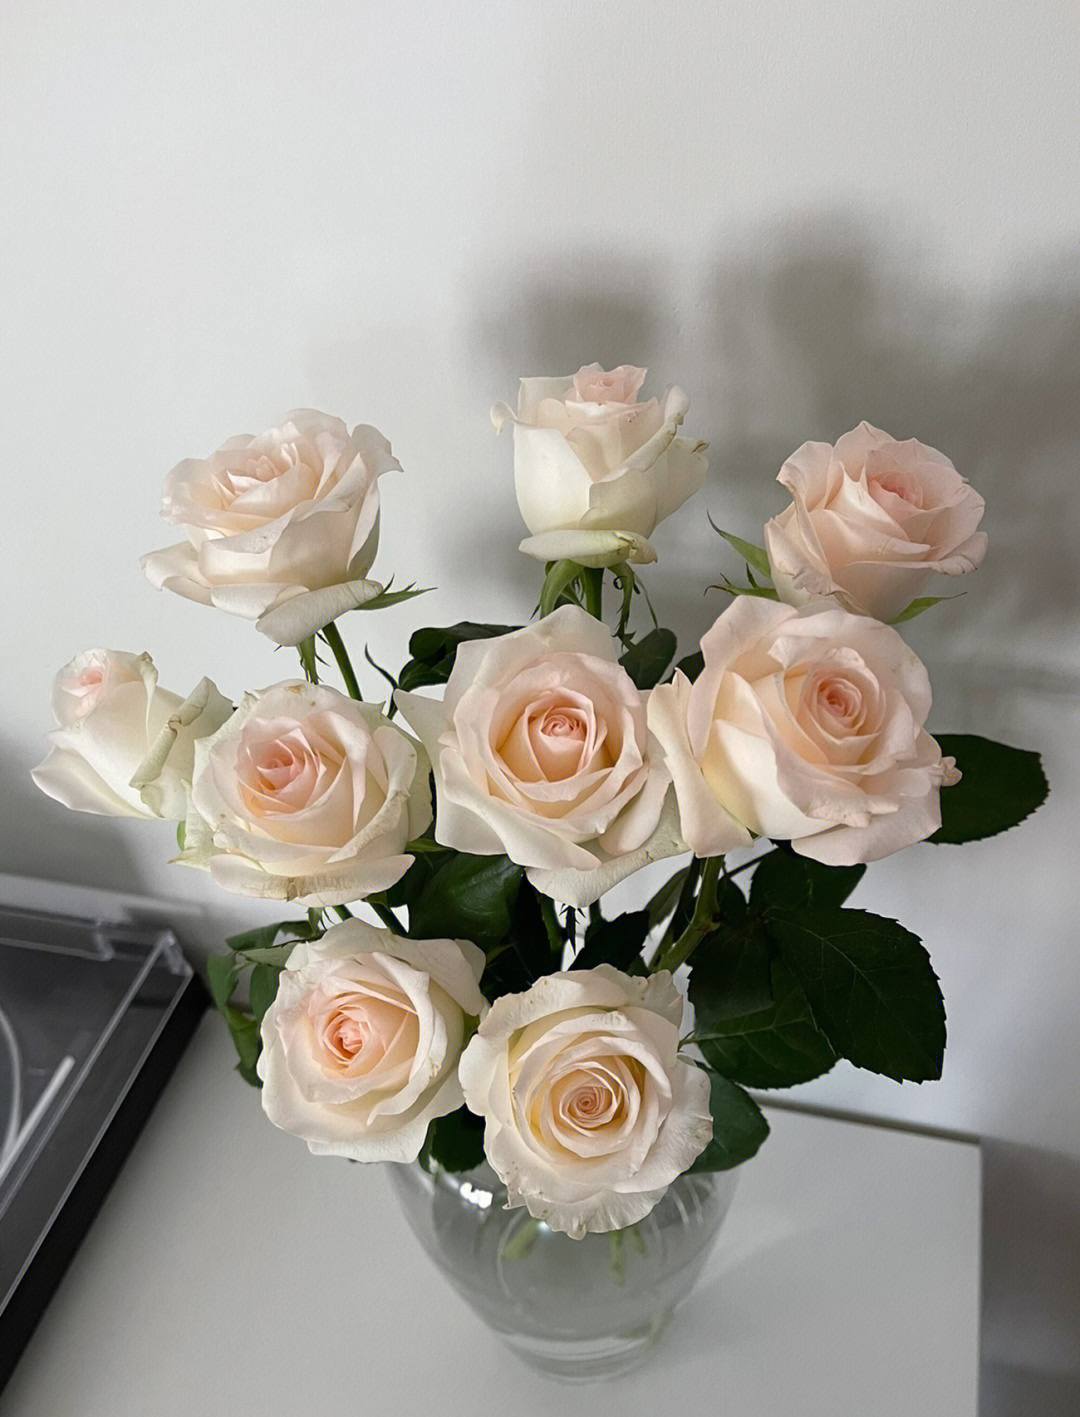 周六又收花啦!小白兔玫瑰自帶仙氣,戴安娜玫瑰粉粉嫩嫩的太美了